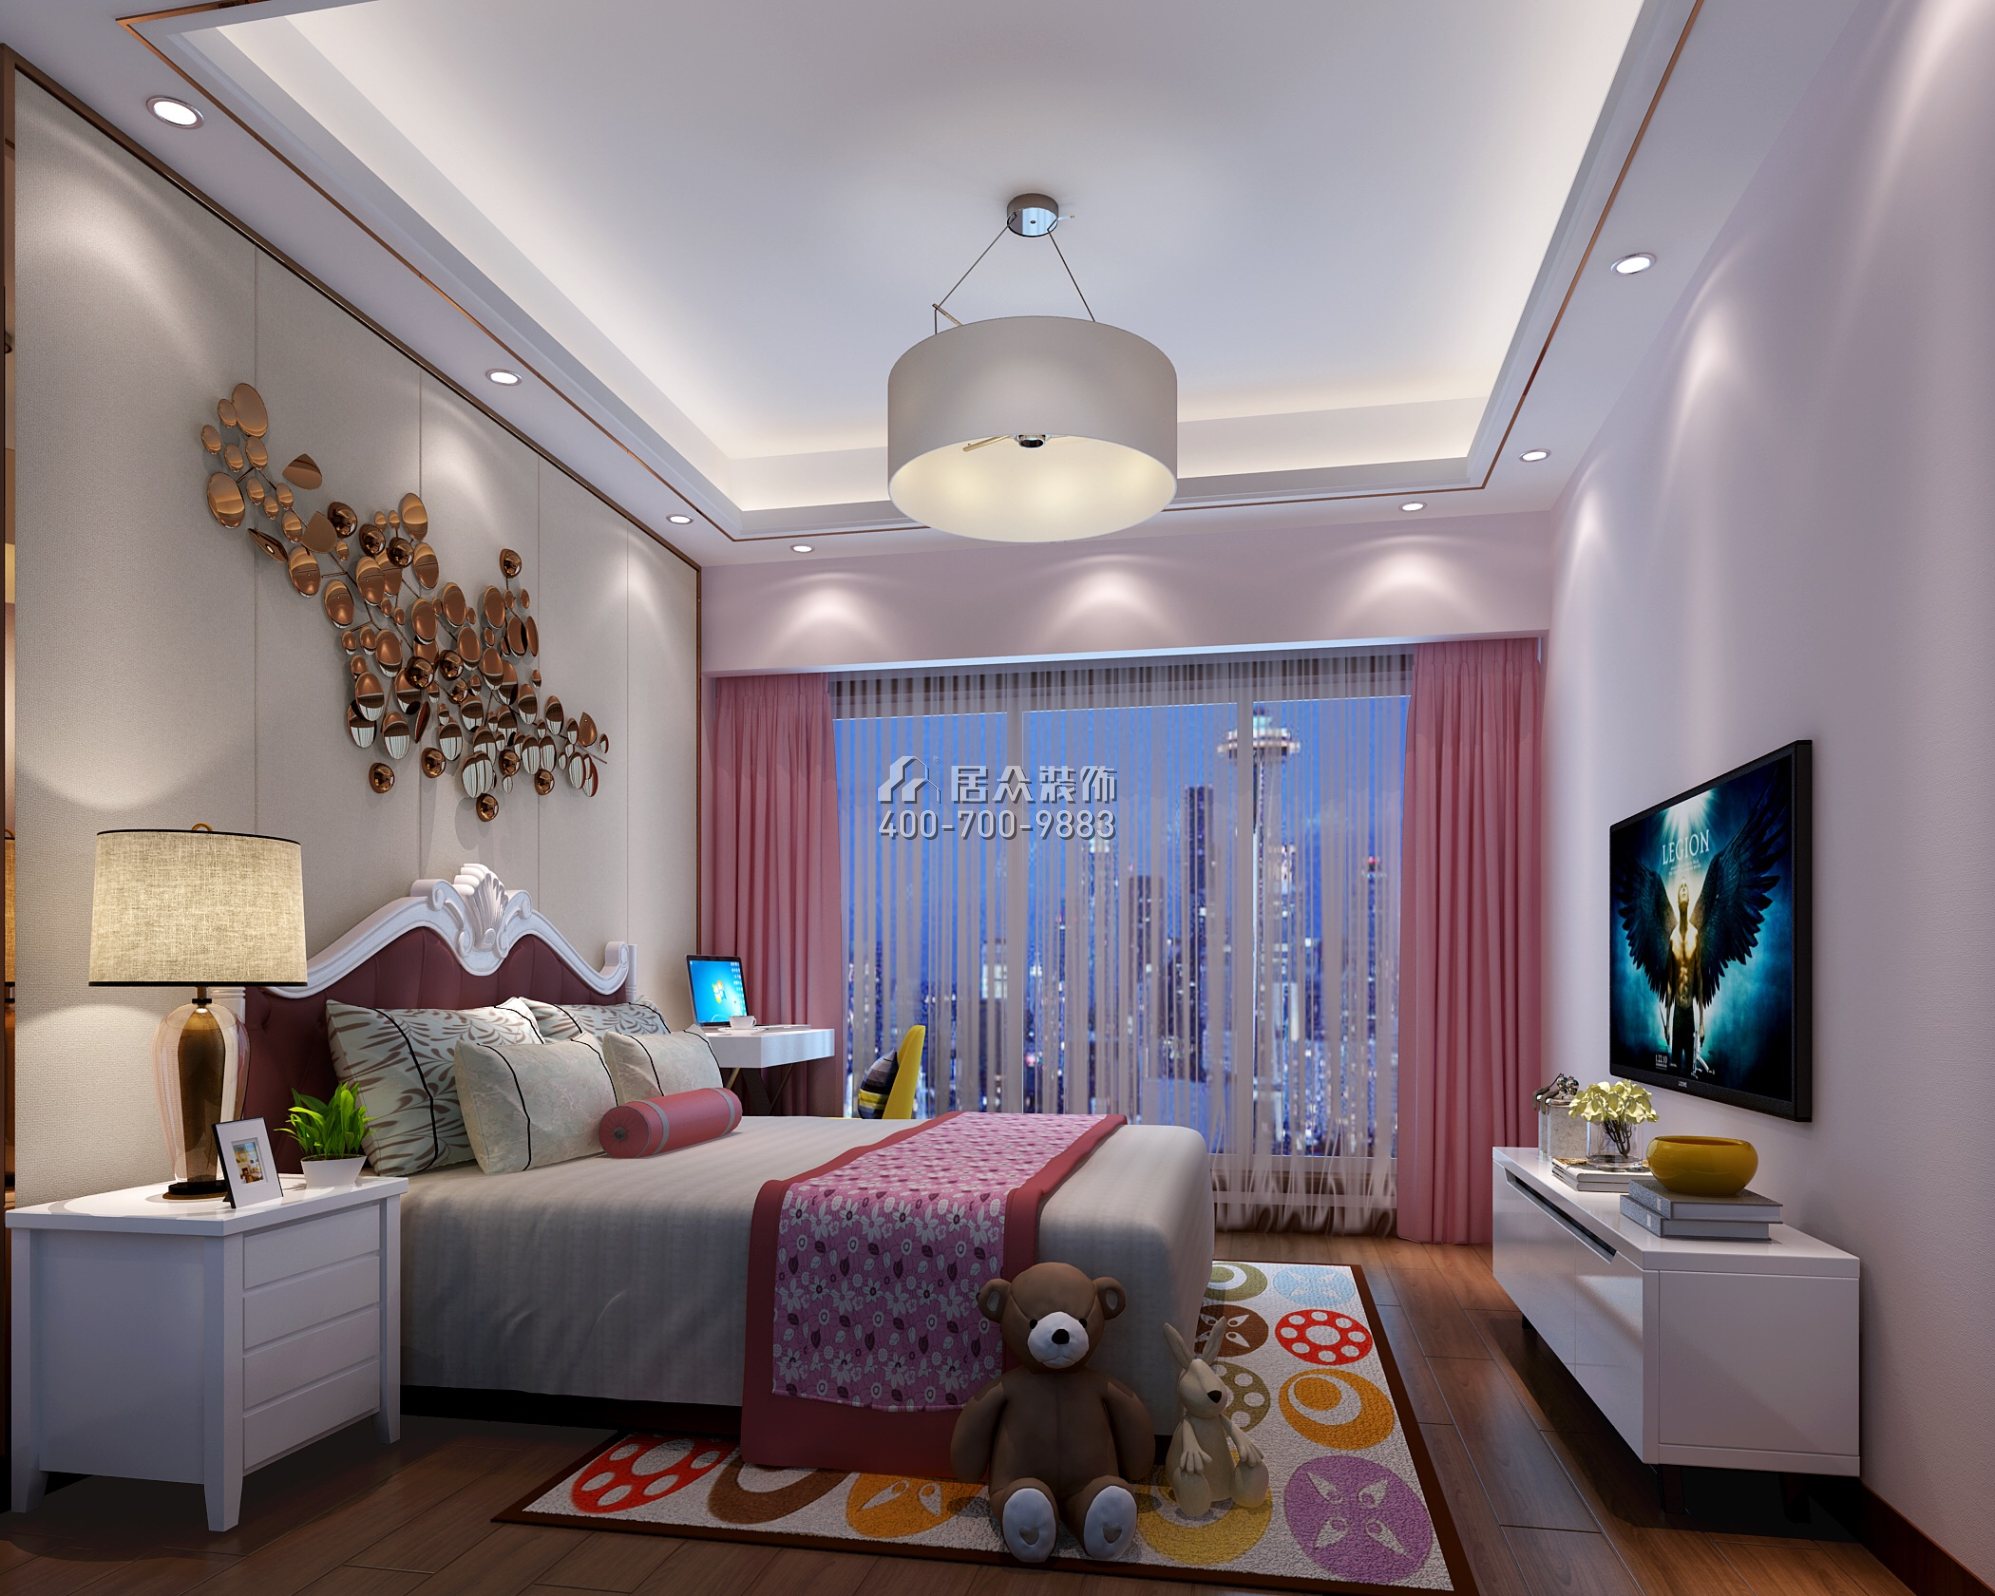 中洲中央公园二期150平方米新古典风格平层户型卧室装修效果图